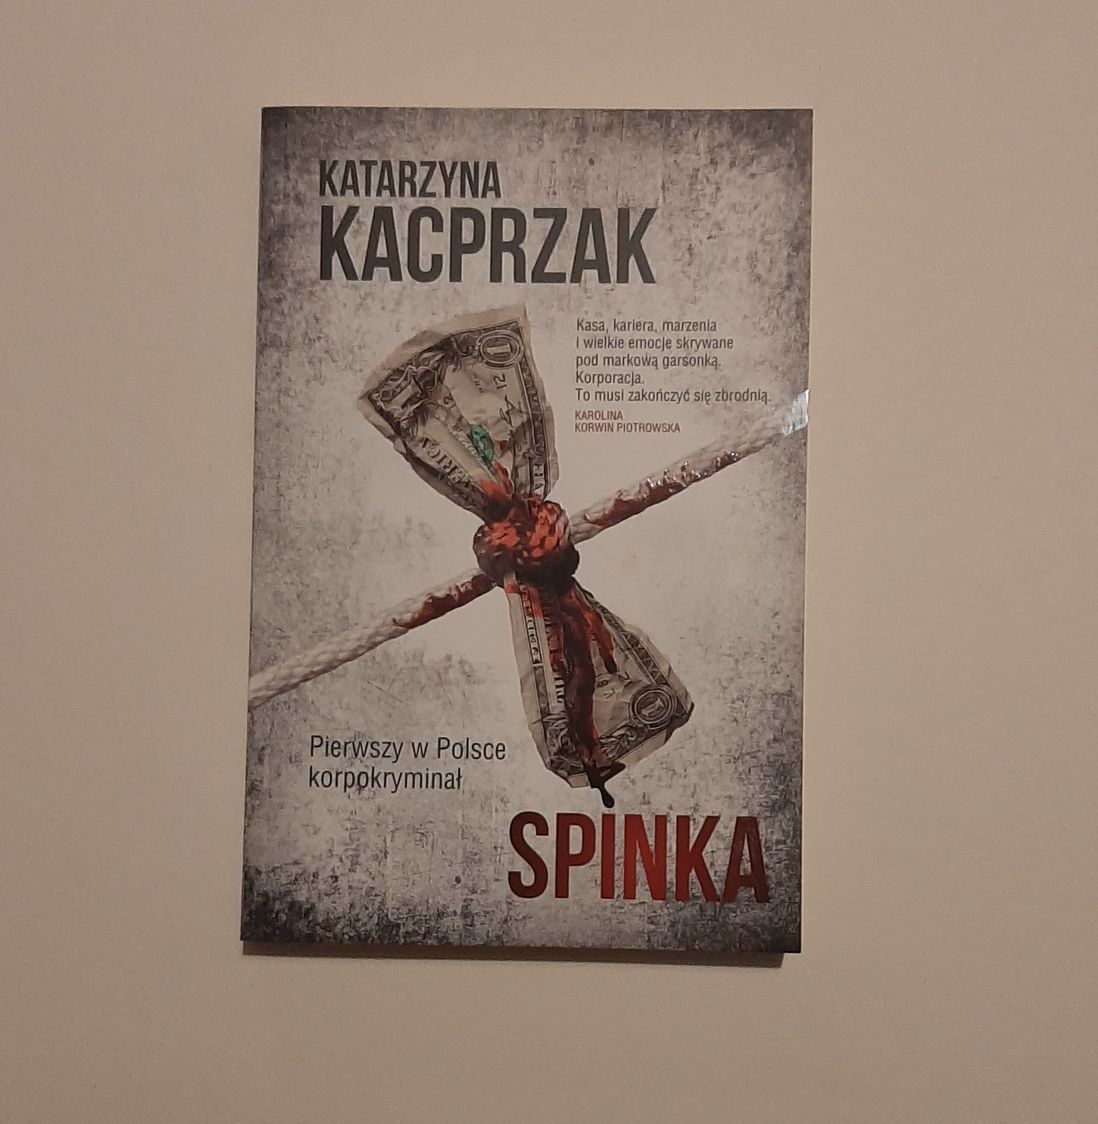 Książka kryminał 'Spinka' Katarzyny Kacprzak